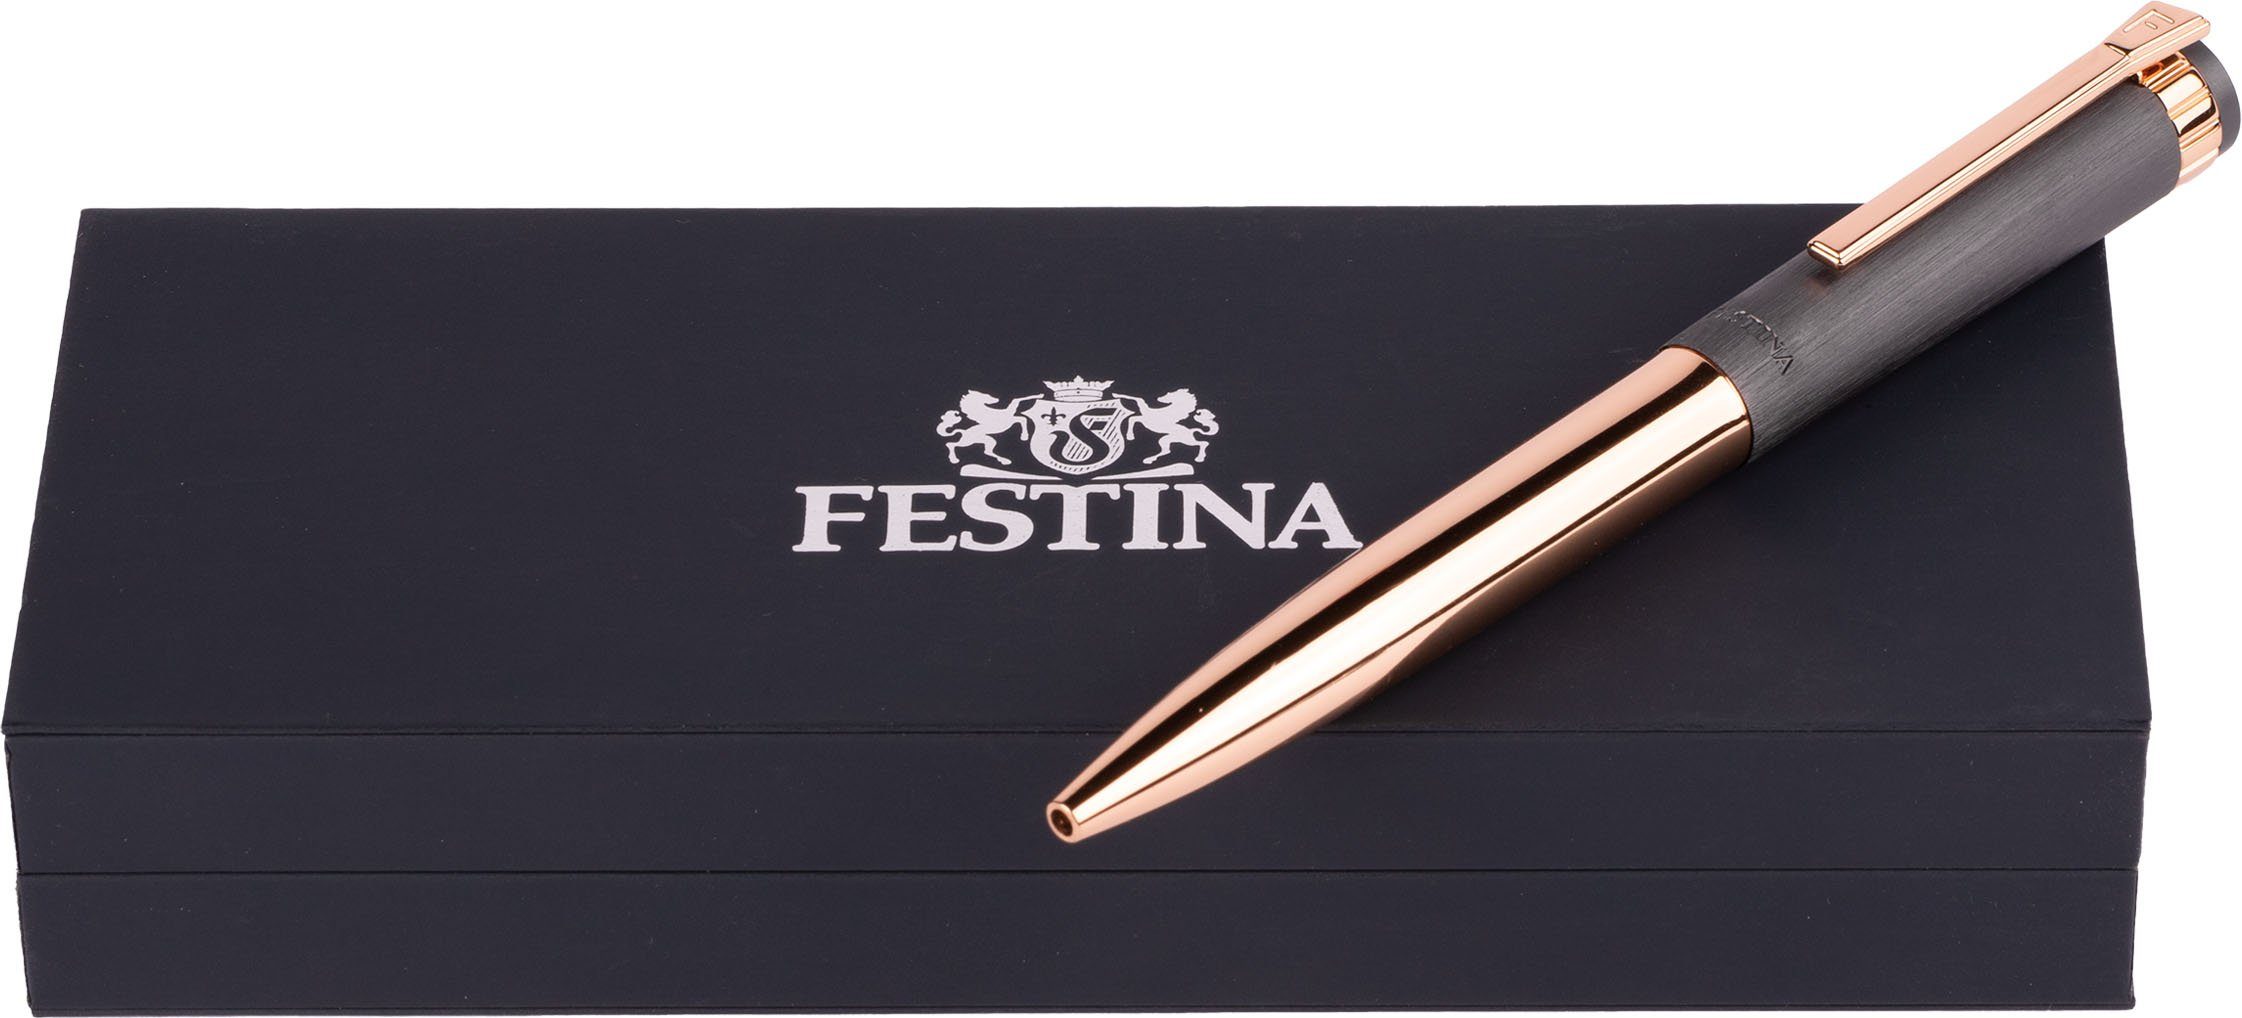 Festina Kugelschreiber Prestige, FWS4107/D, inklusive Geschenk Etui, als auch ideal